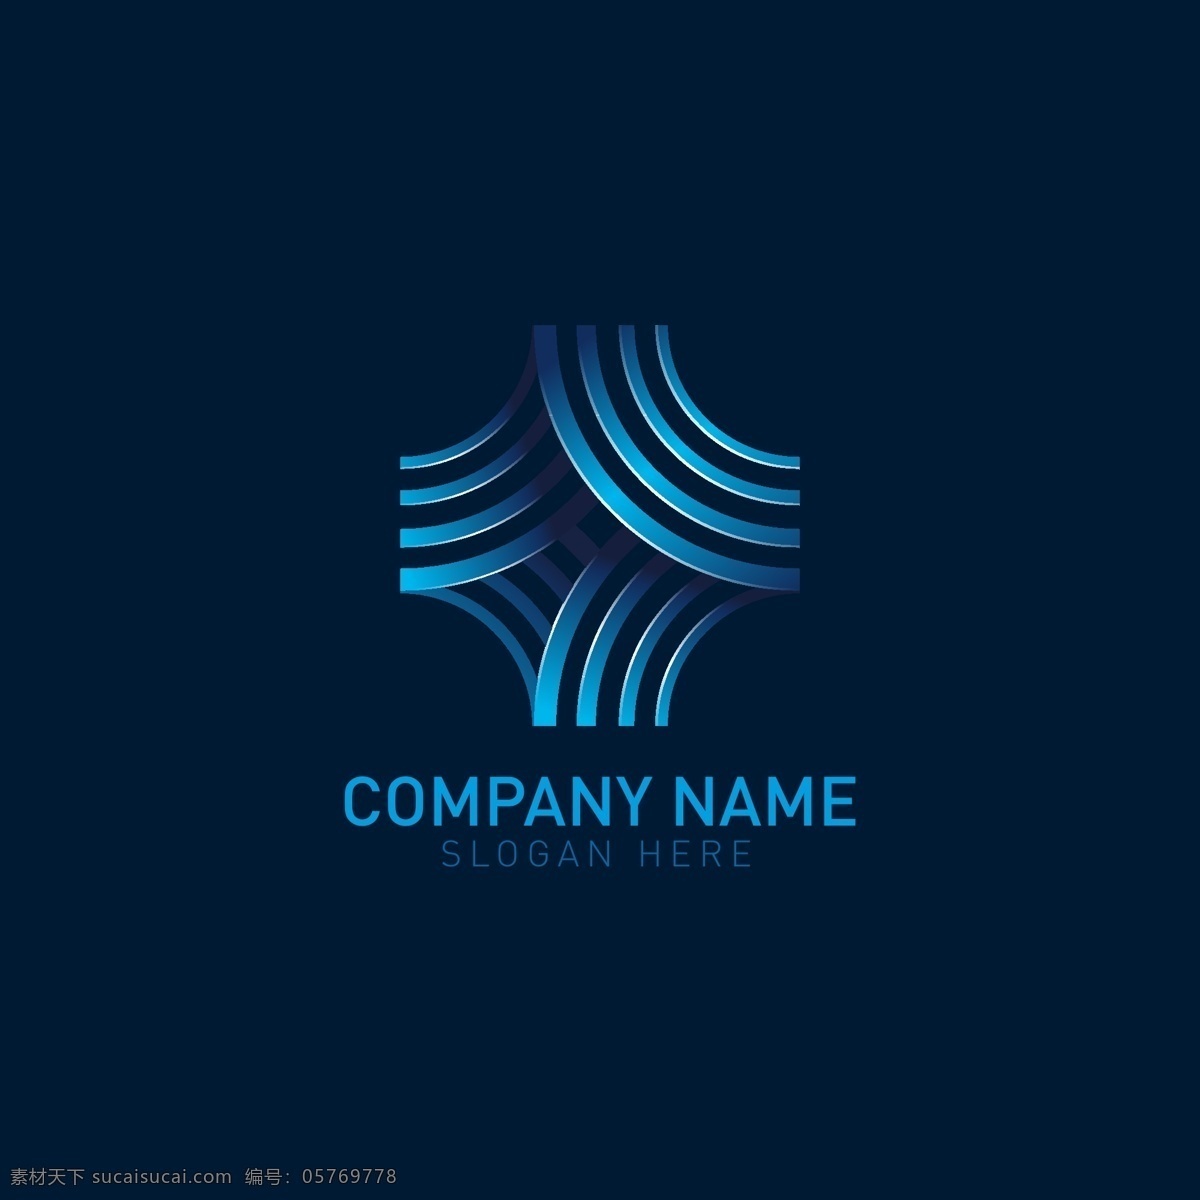 logo 商标图片 科技 蓝色 酷炫 图案 图标 商标